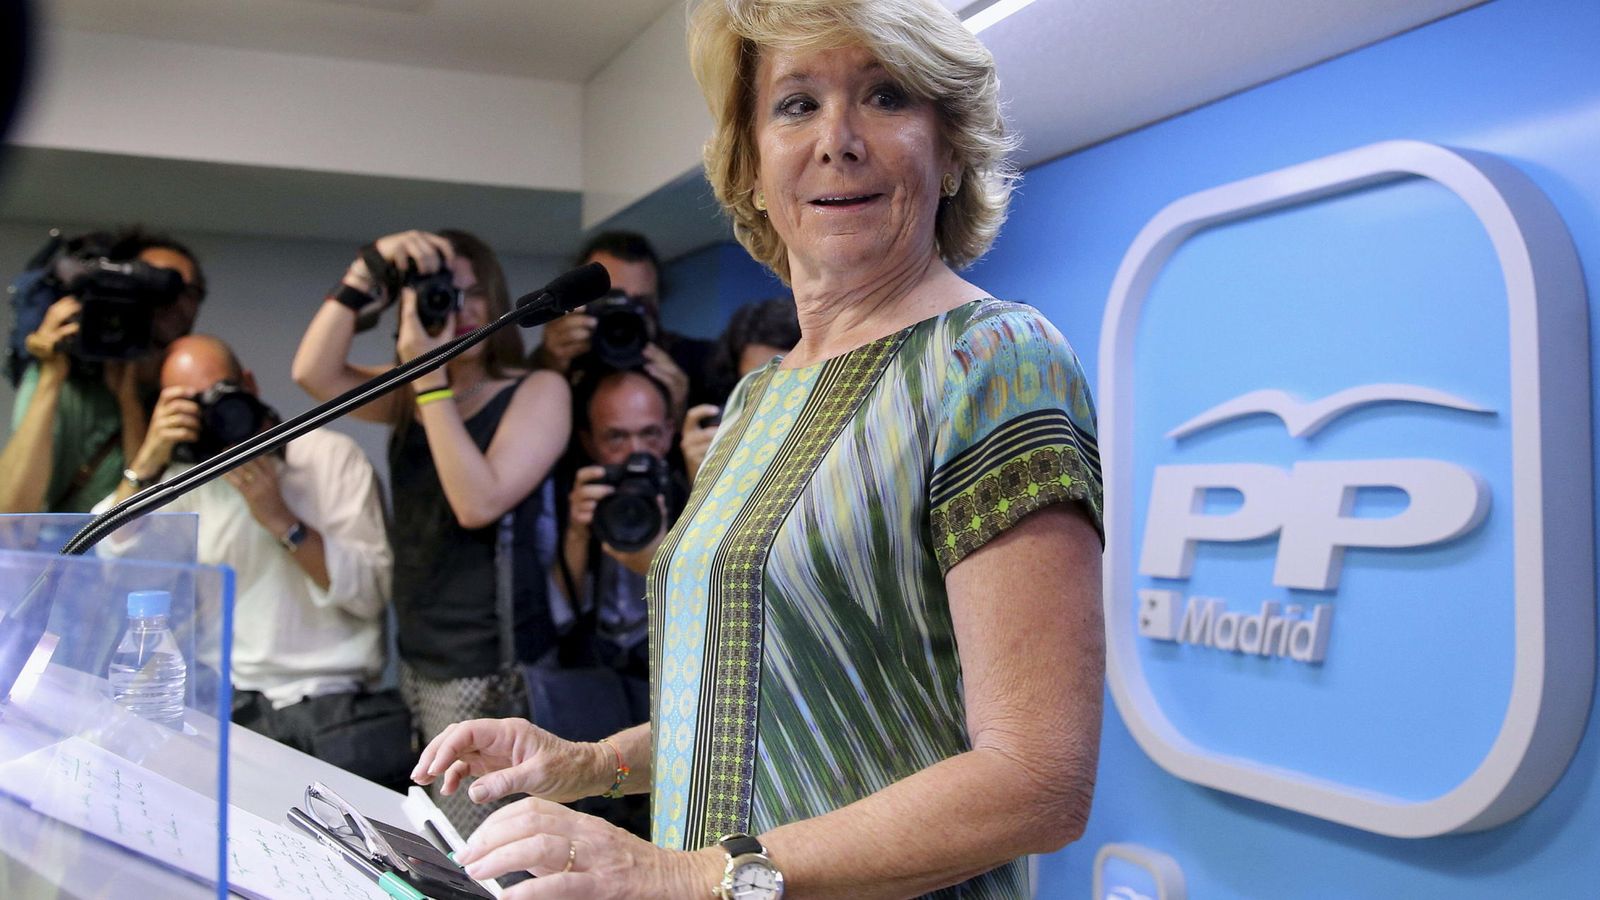 Foto: La presidenta del PP de Madrid y candidata a la Alcaldía de la capital, Esperanza Aguirre. (EFE)